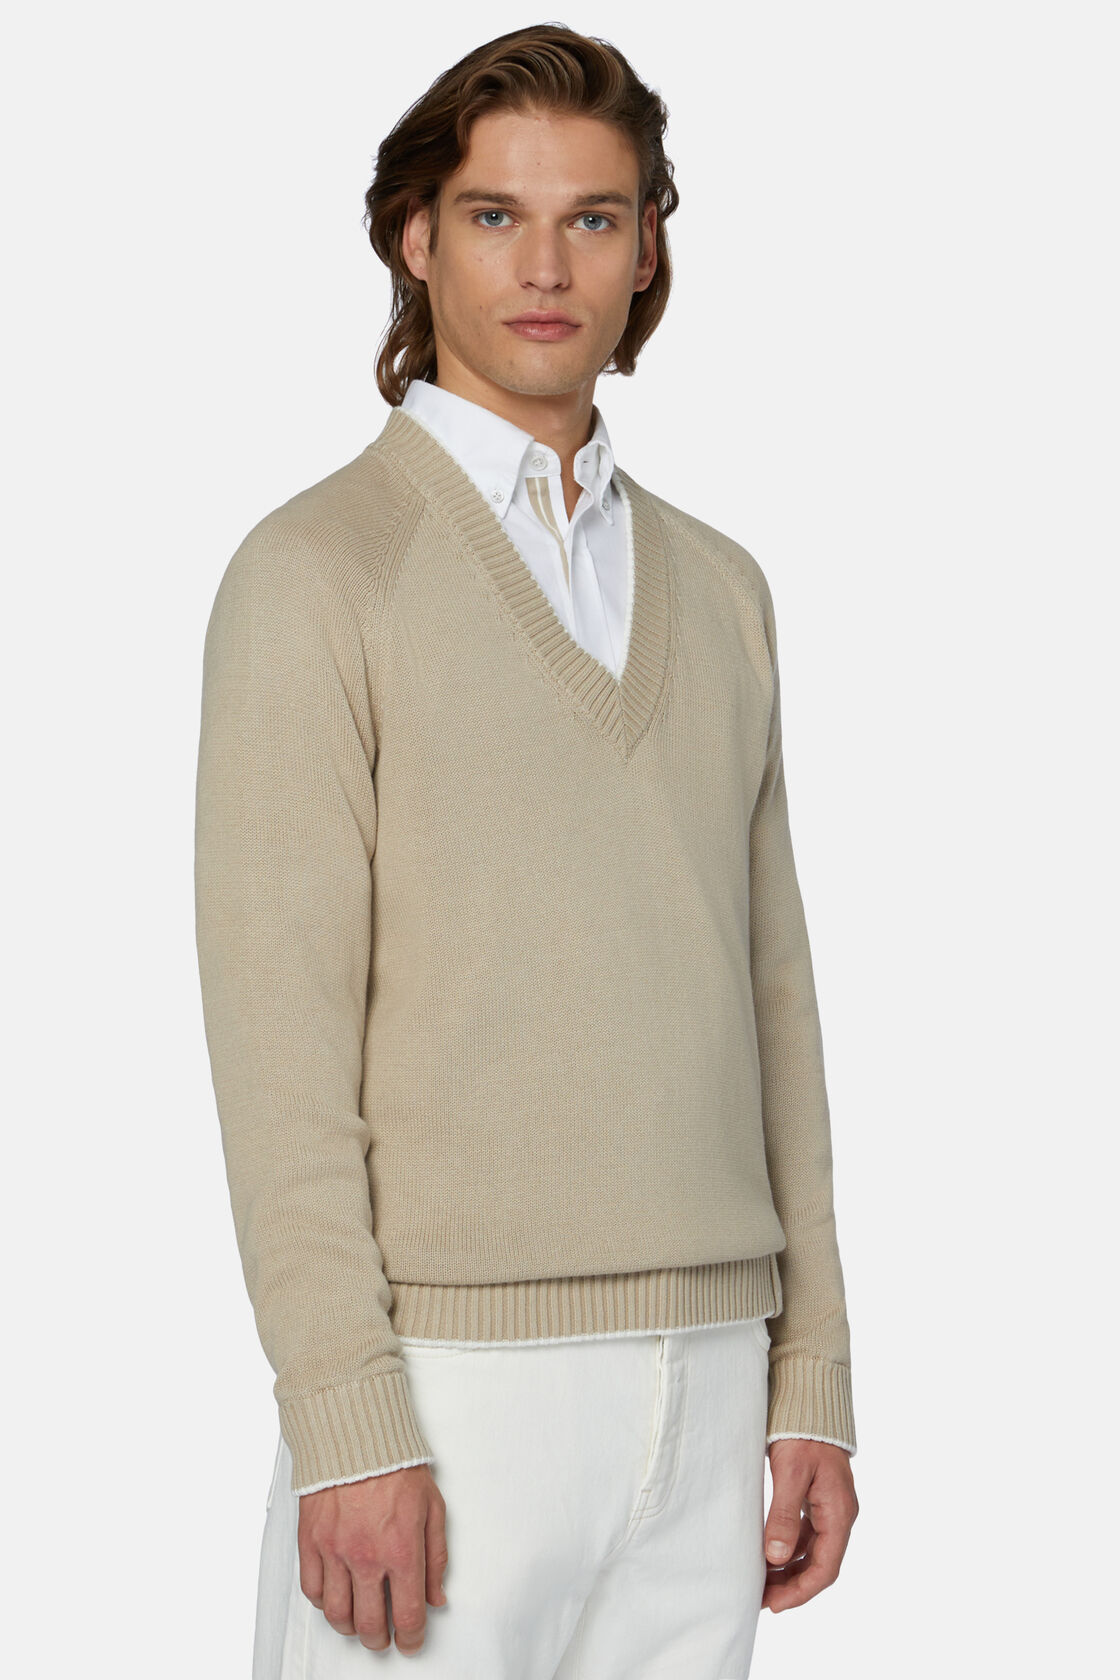 Beżowy sweter z bawełny organicznej z dekoltem w serek, Beige, hi-res